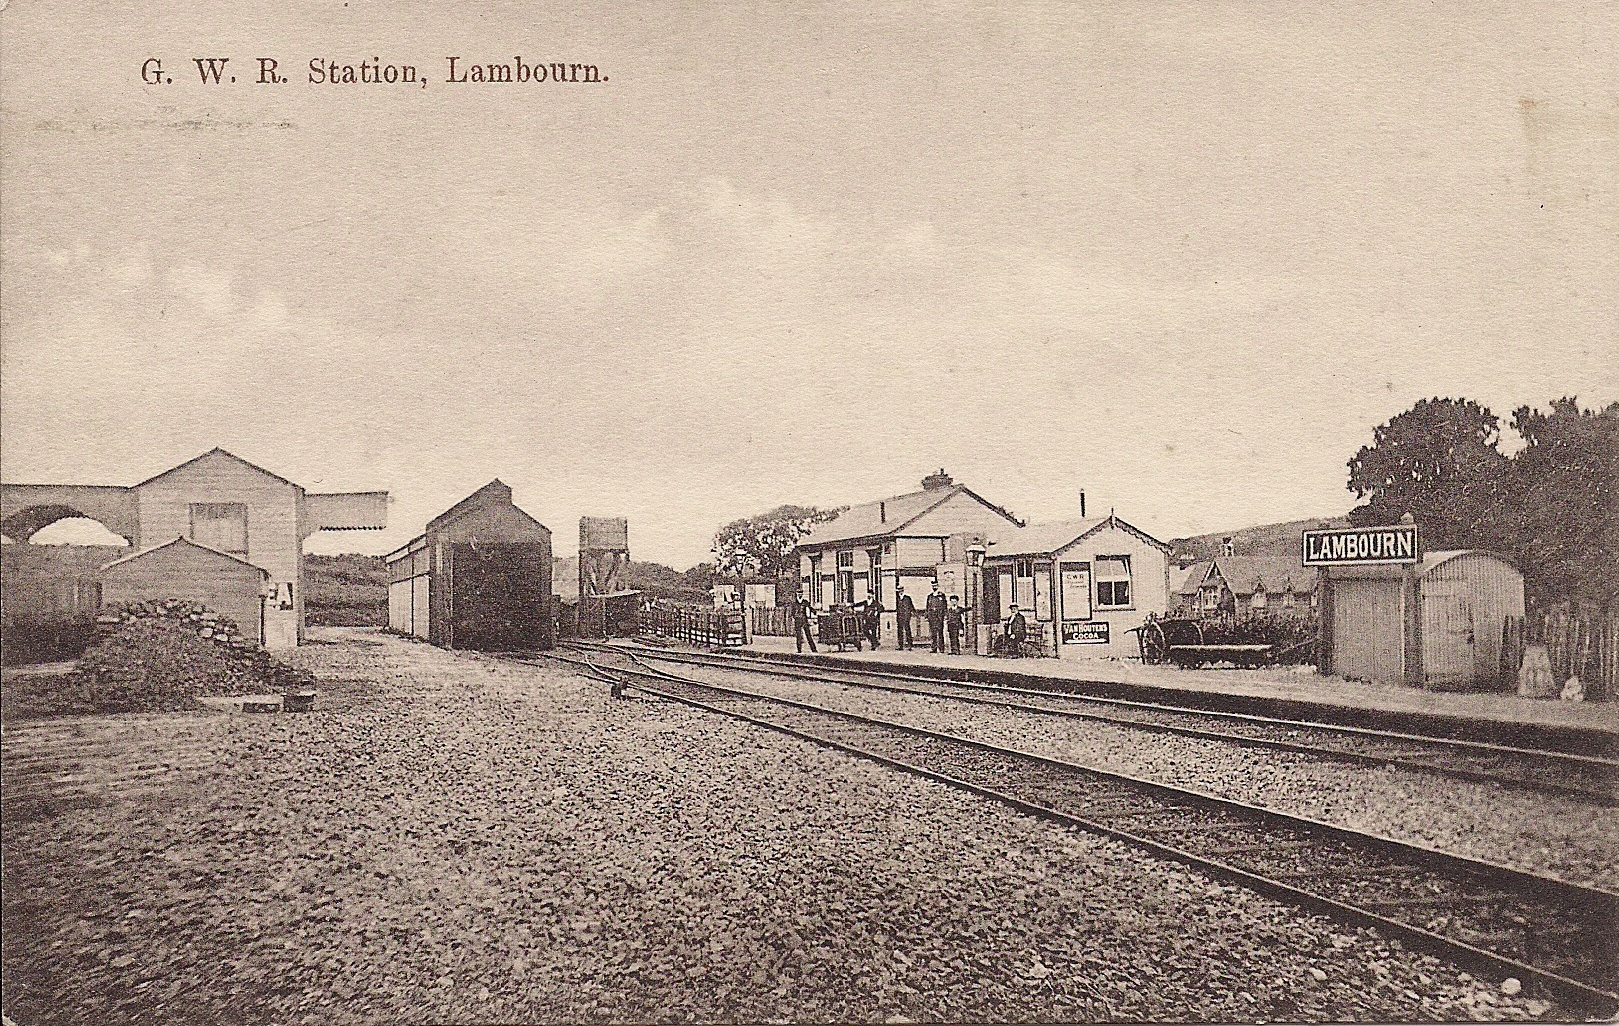 Lambourn railway station